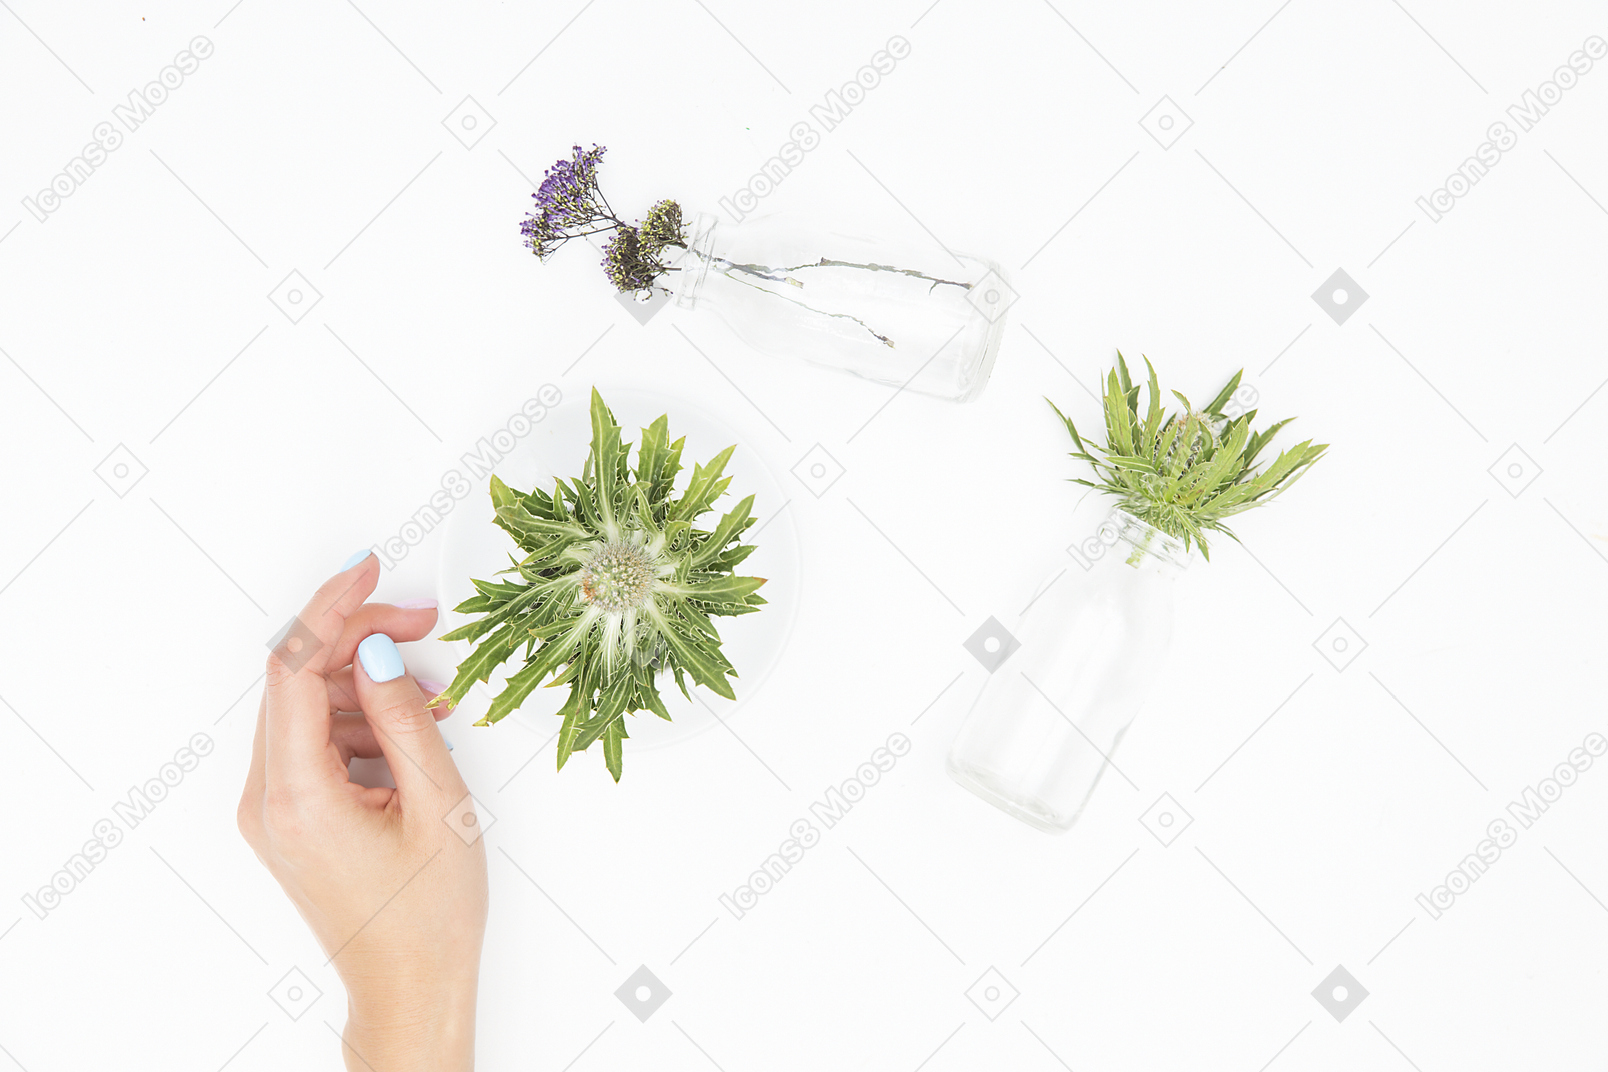 Женская рука рядом с различными стеклянными предметами и зелеными растениями